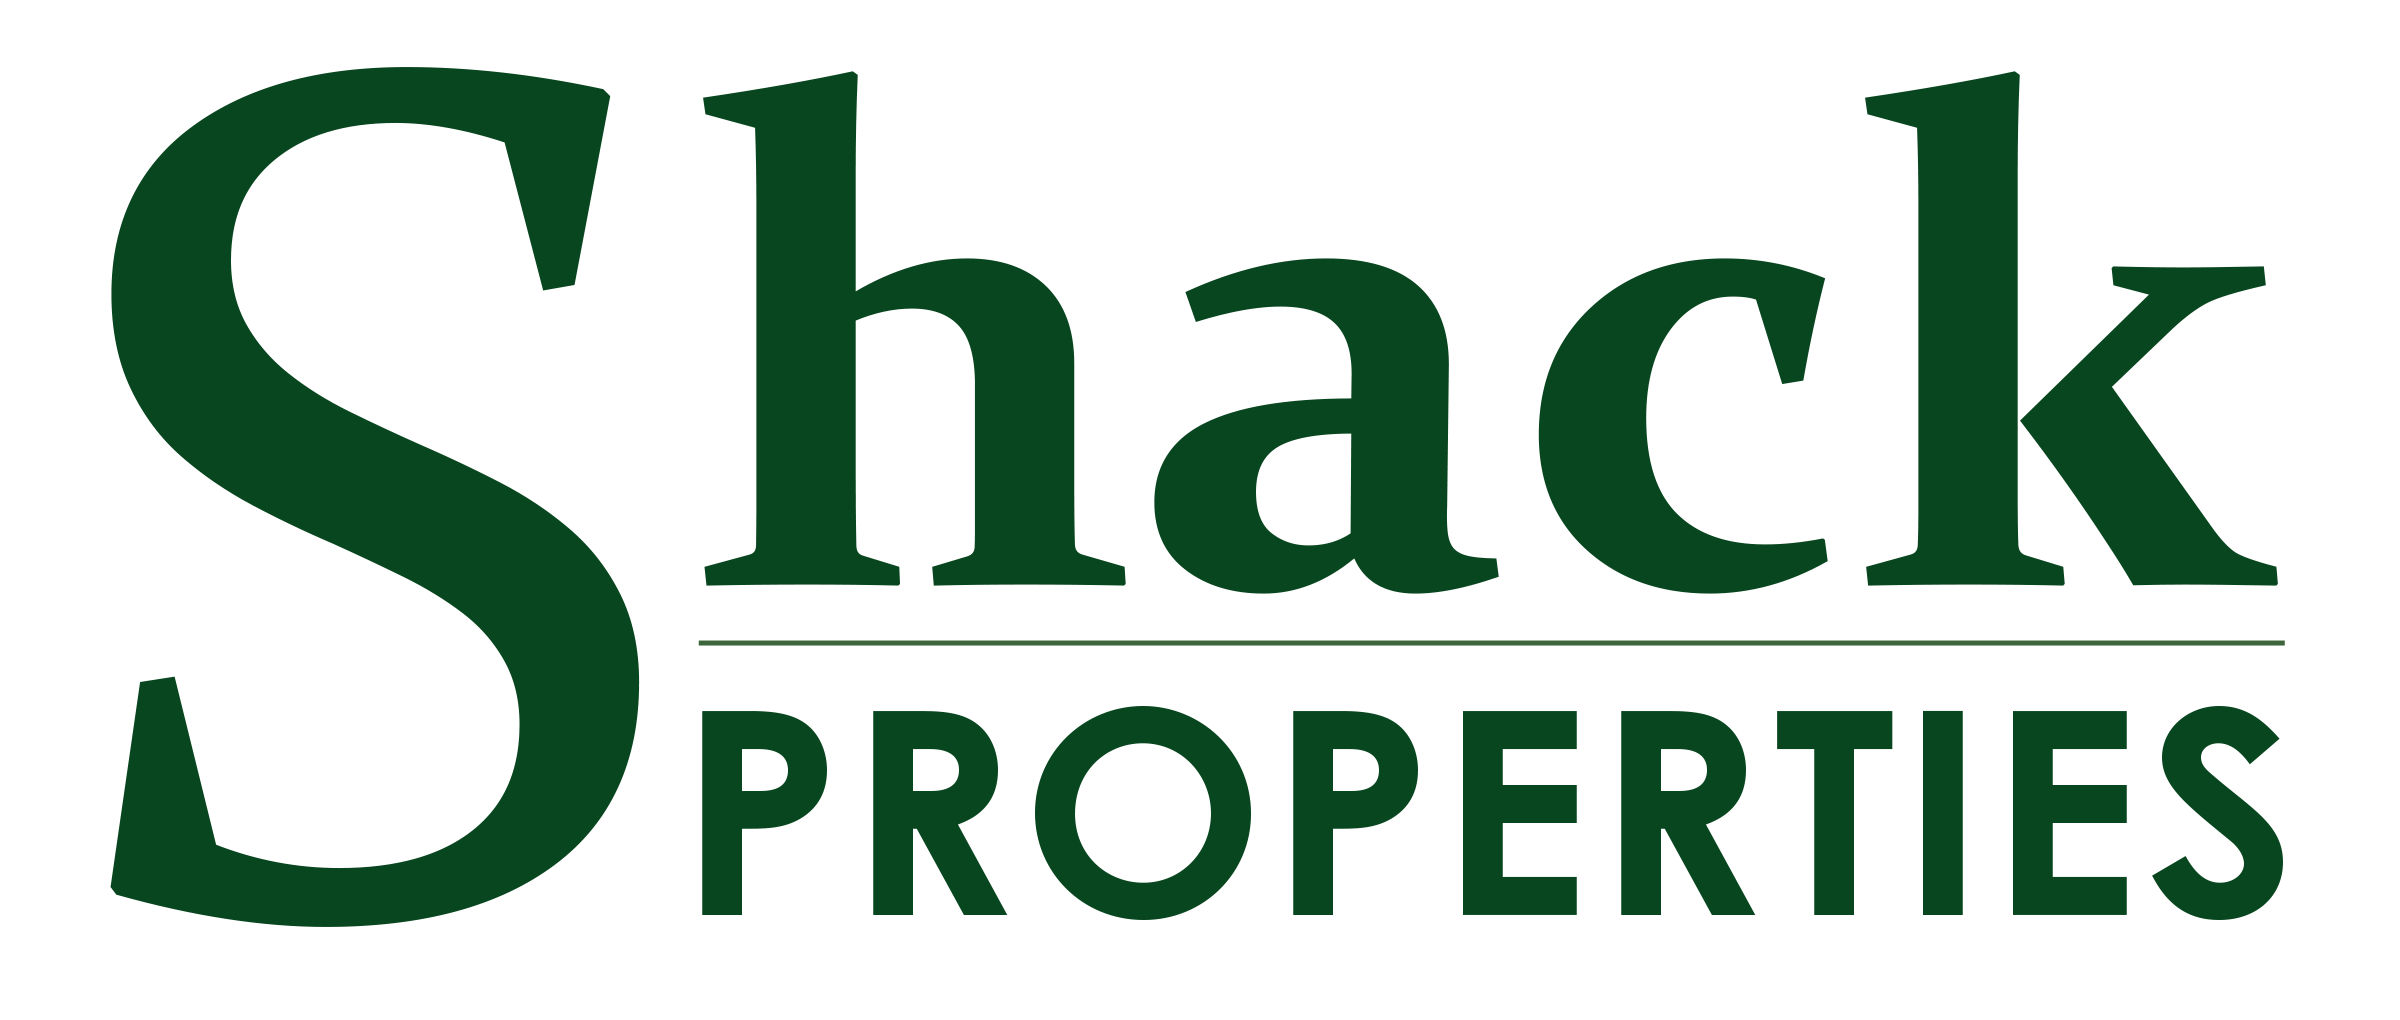 Shack Properties